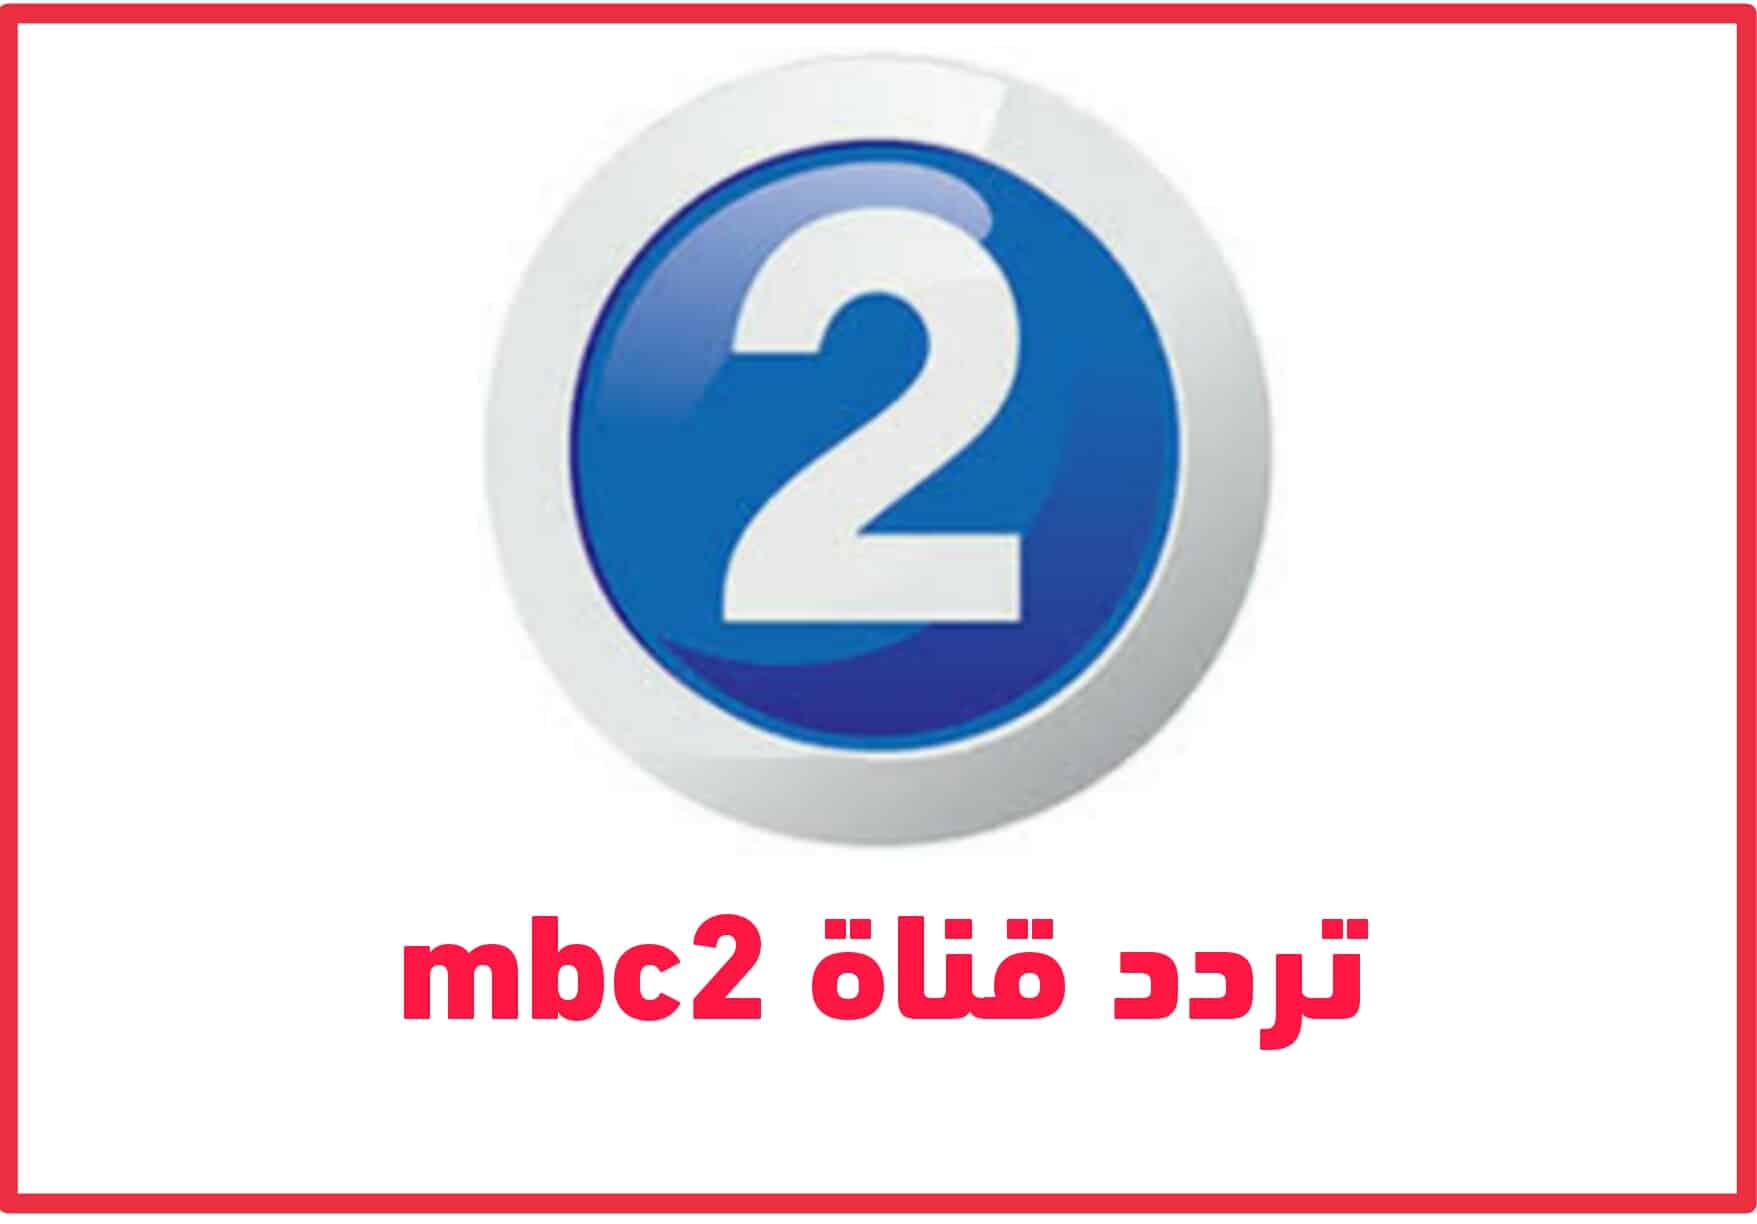 تردد قناة ام بي سي 2 الجديد